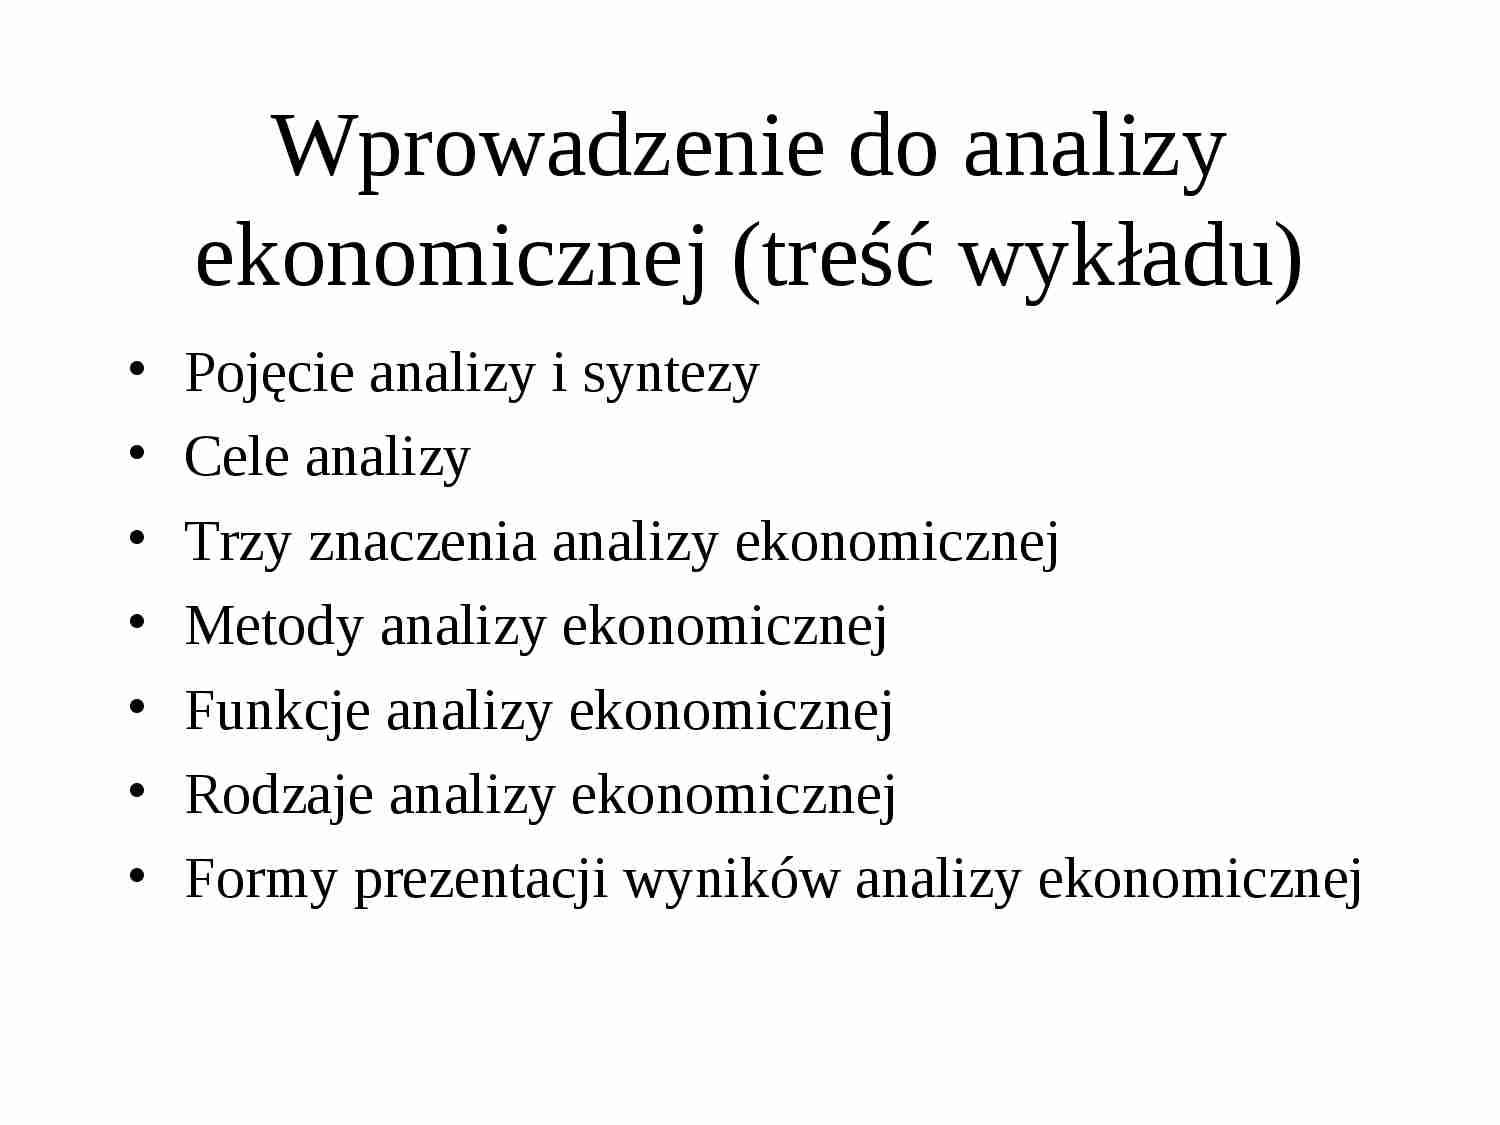 Wprowadzenie do analizy ekonomicznej - strona 1